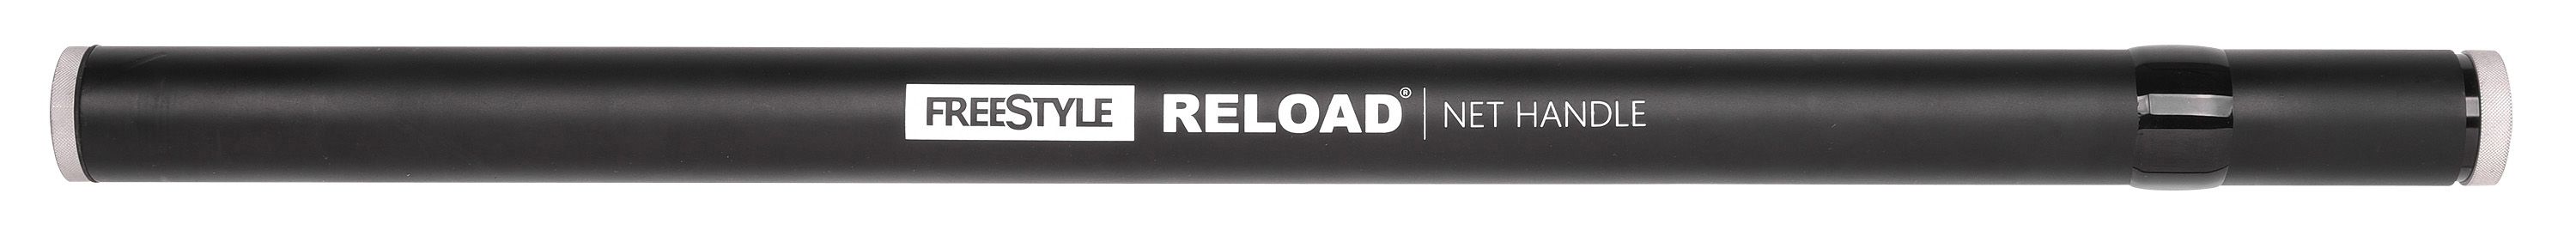 Spro Freestyle Reload Net Handle Kescherstab - 4,00m